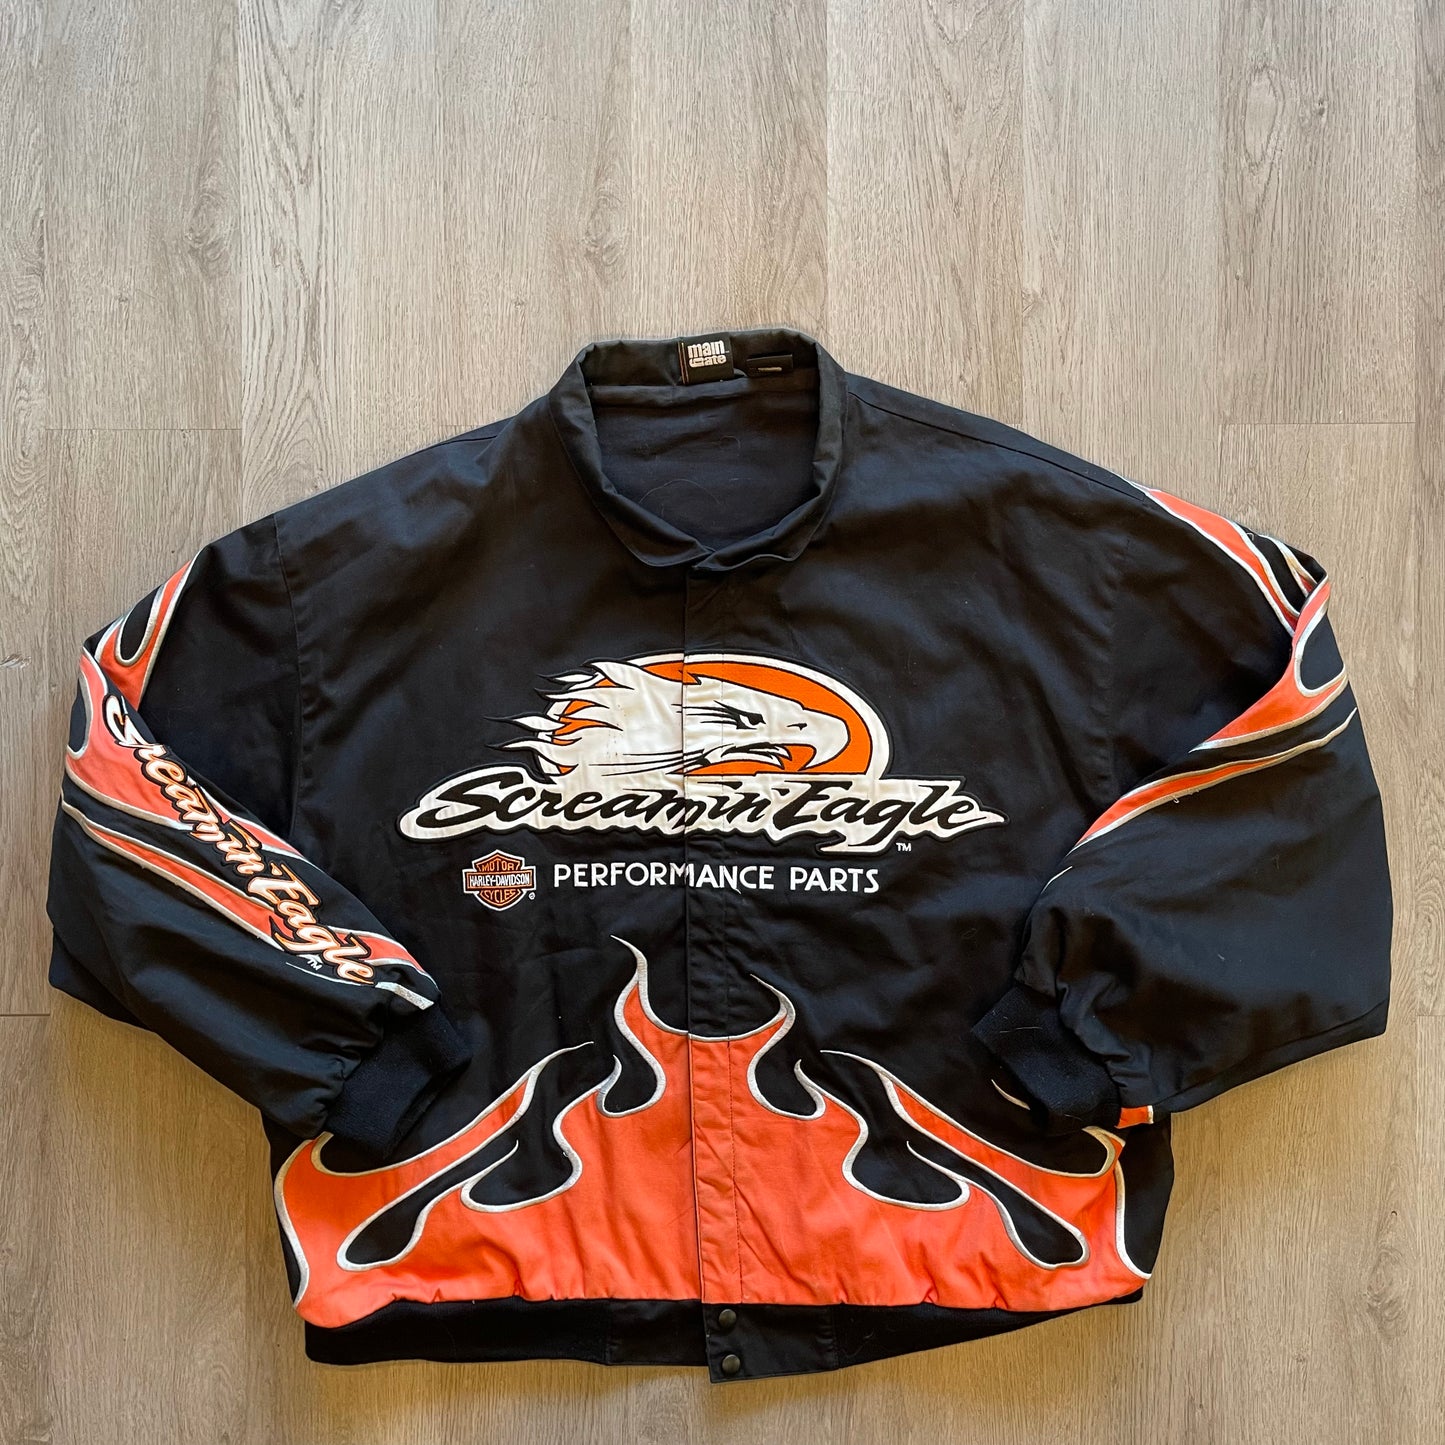 Vintage Harley Davidson Biker Jacket